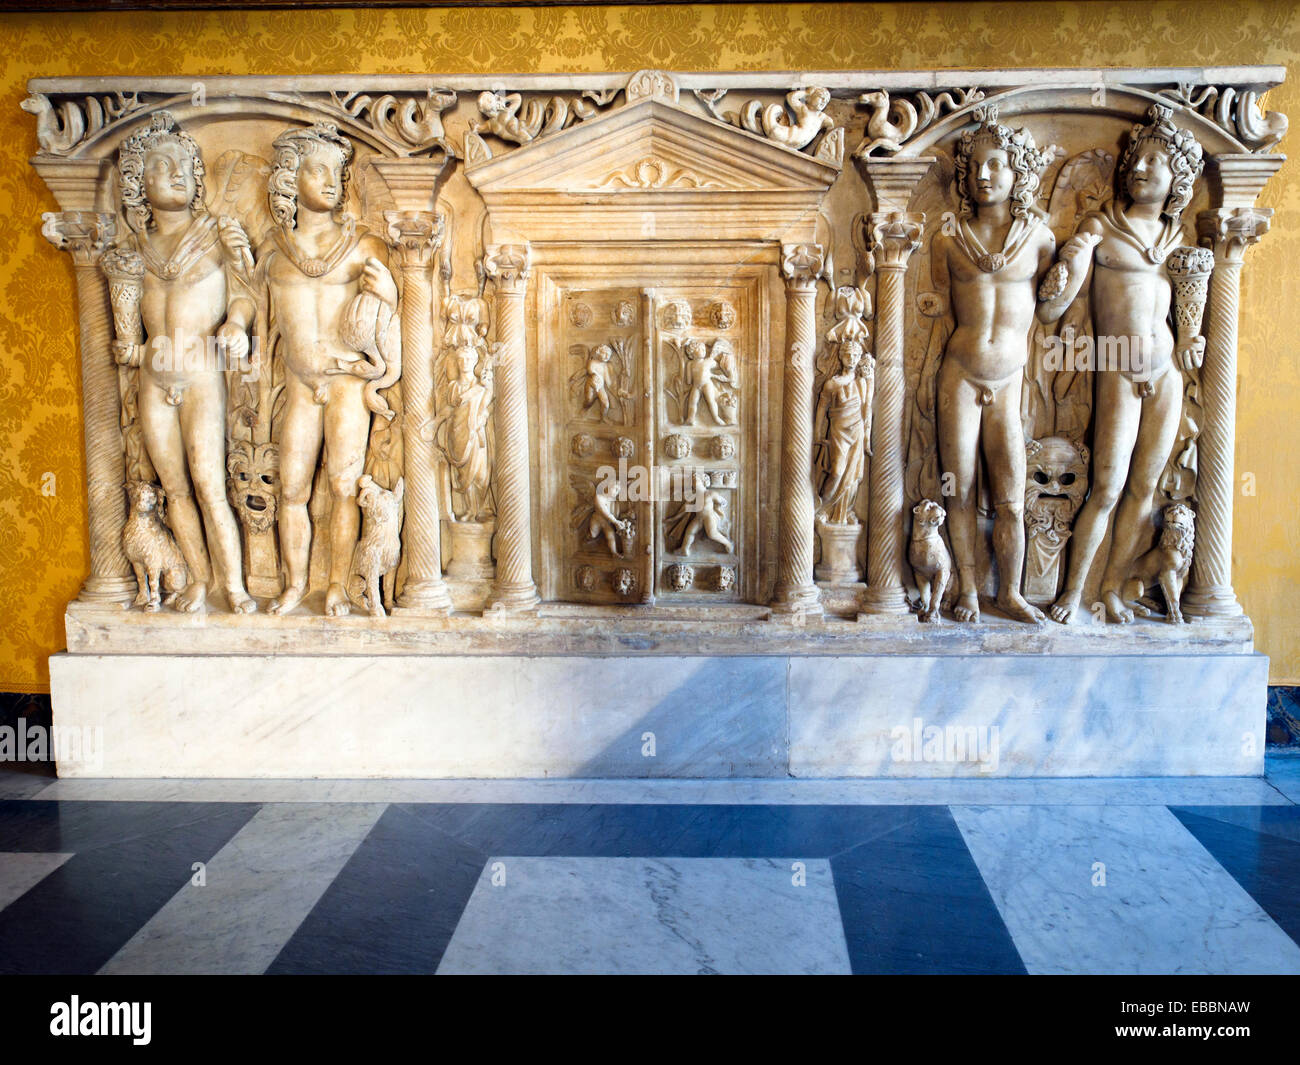 Sarcophage représentant les quatre saisons du iiie siècle après J.-C. Musei Capitolini - Rome Italie Banque D'Images